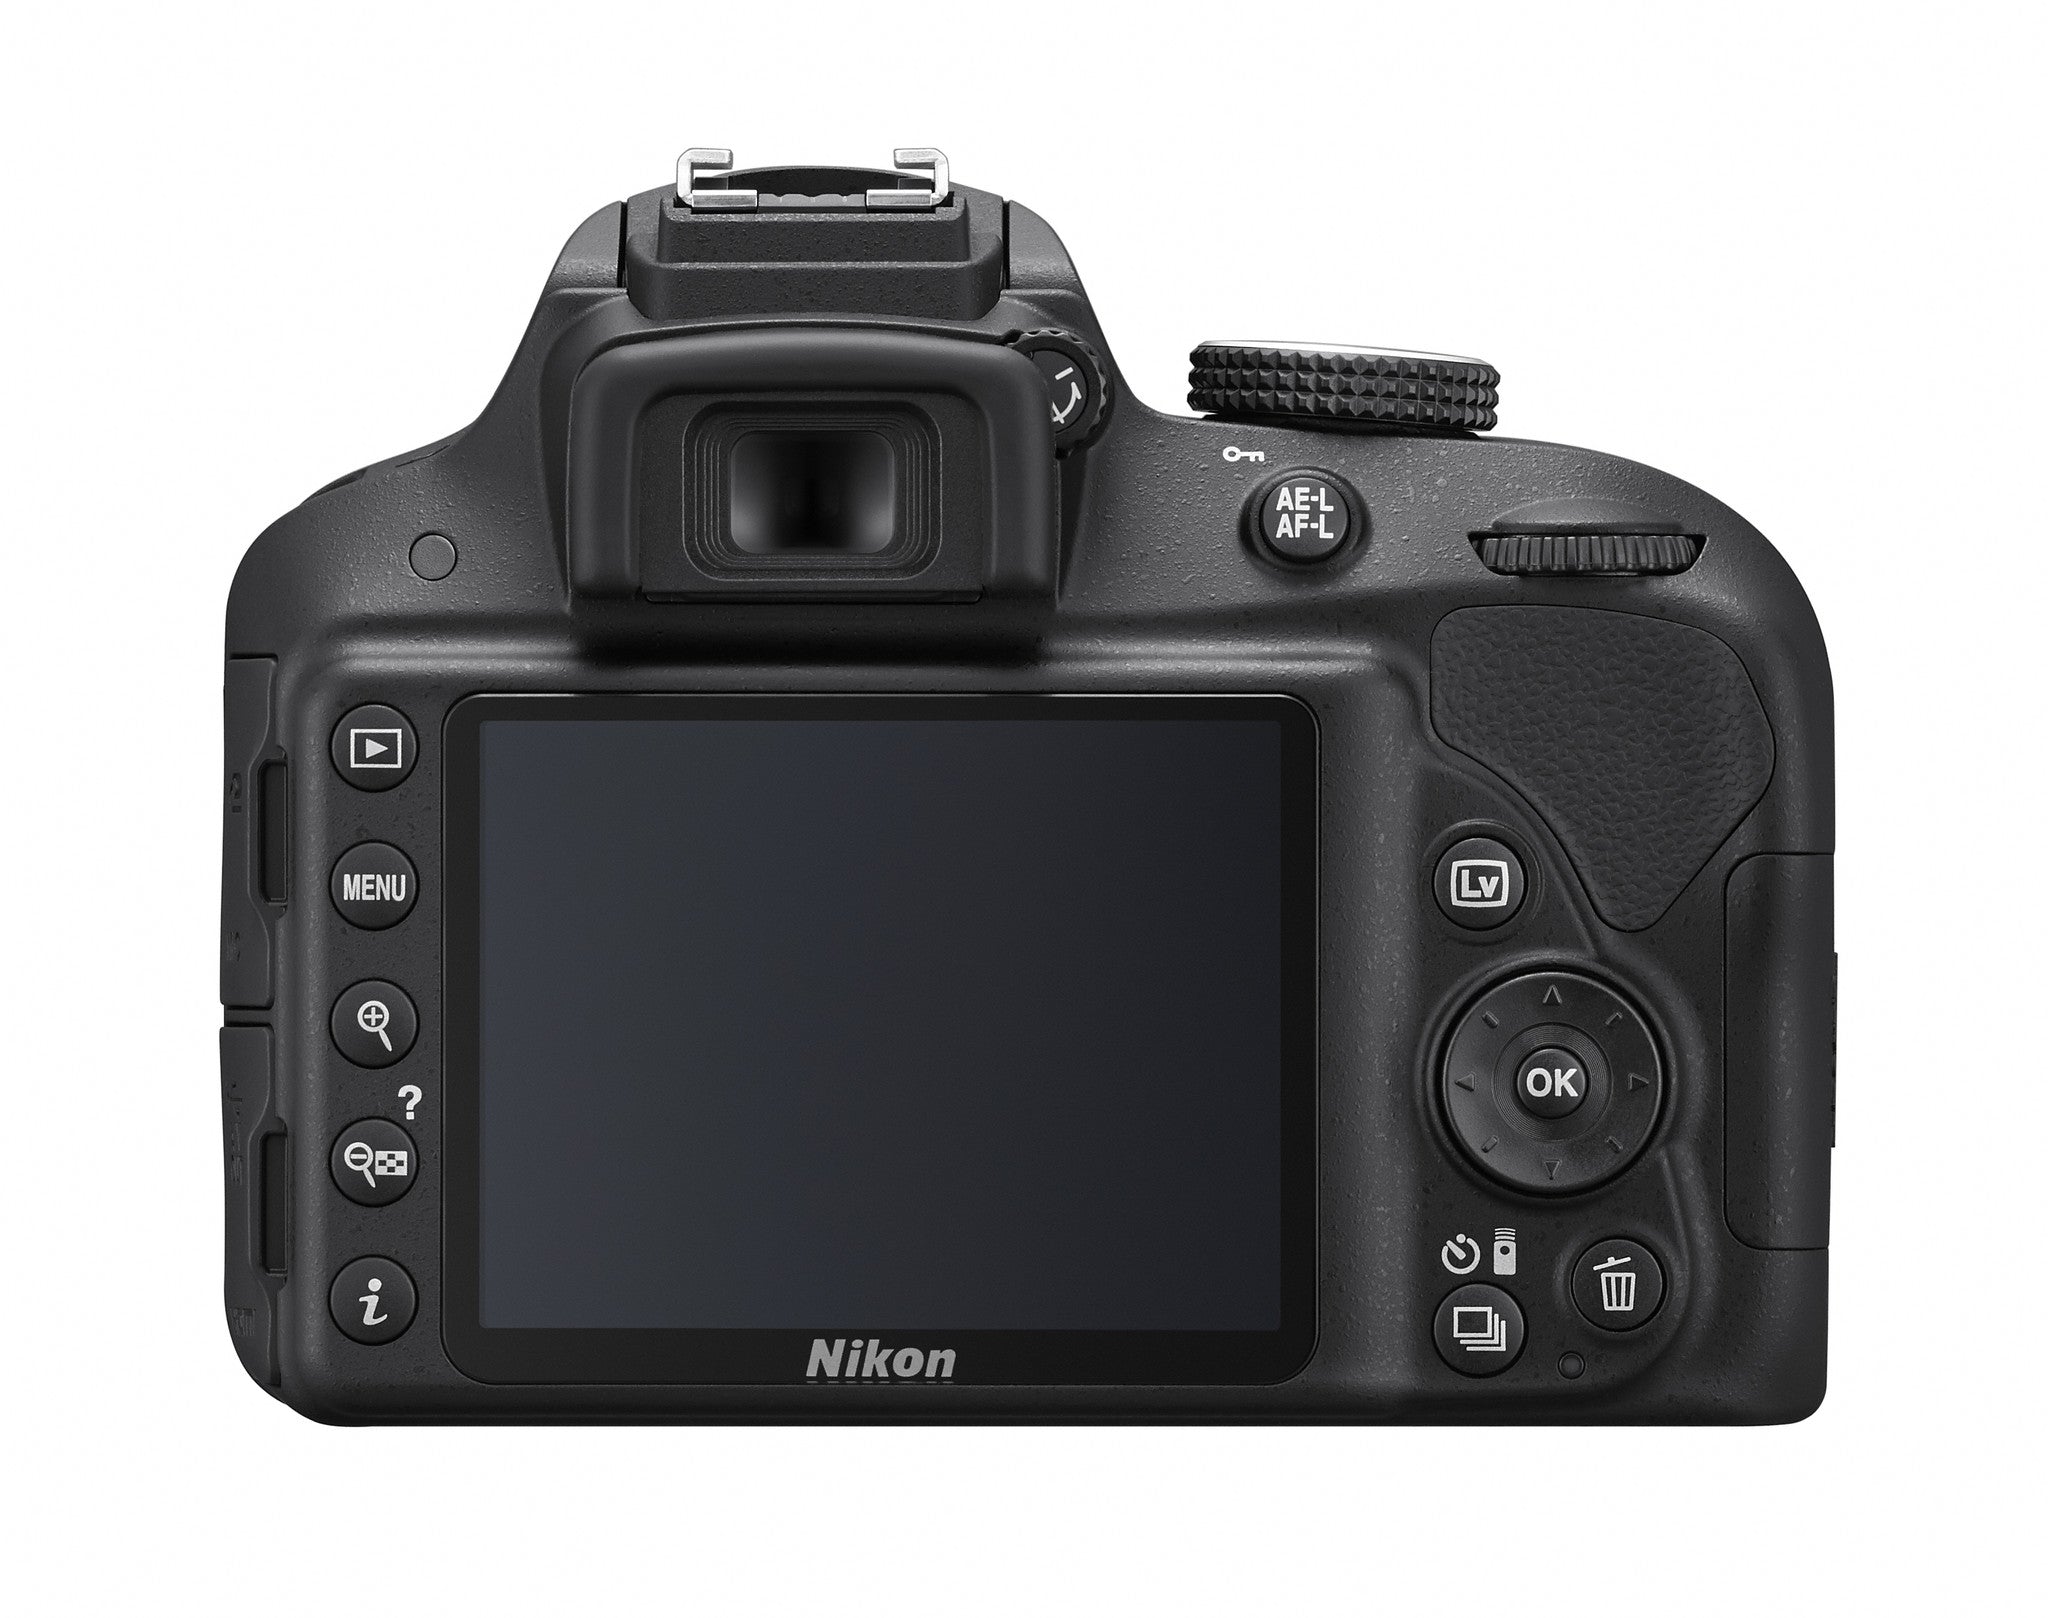 Nikon D3300 Digital SLR Camera 2 Lens Kit (18-55mm and 55-200mm ) + Bag, discontinued, Nikon - Pictureline  - 3